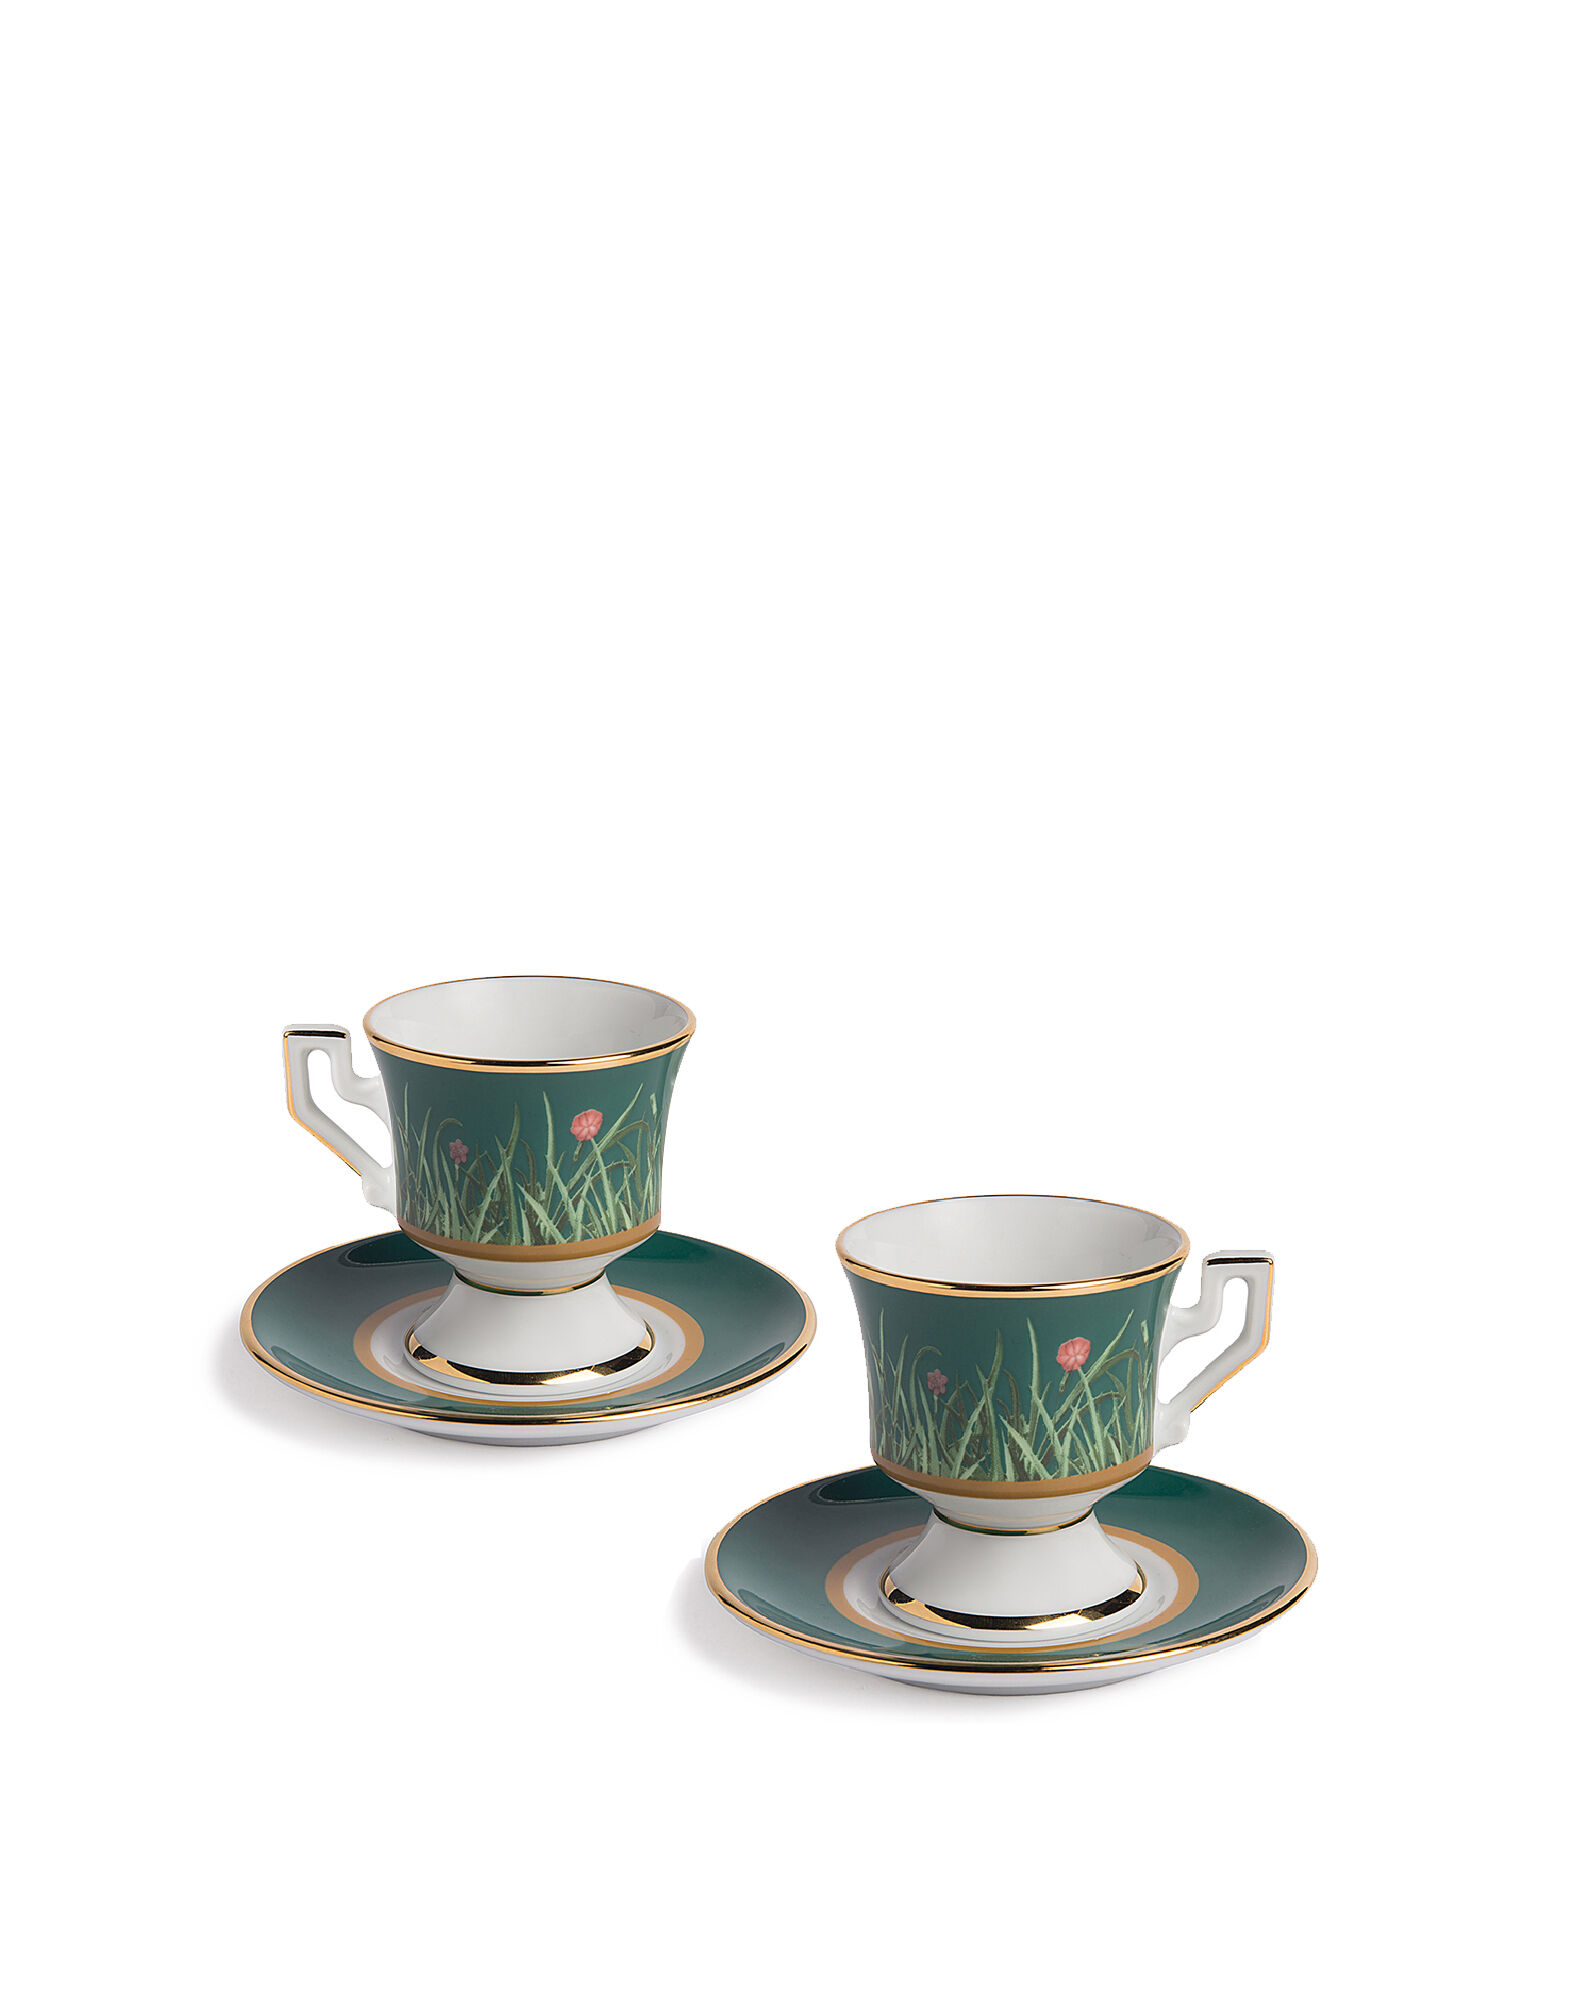 Elegant Bustelo Cuban Coffee Espresso Cups - Set of 2